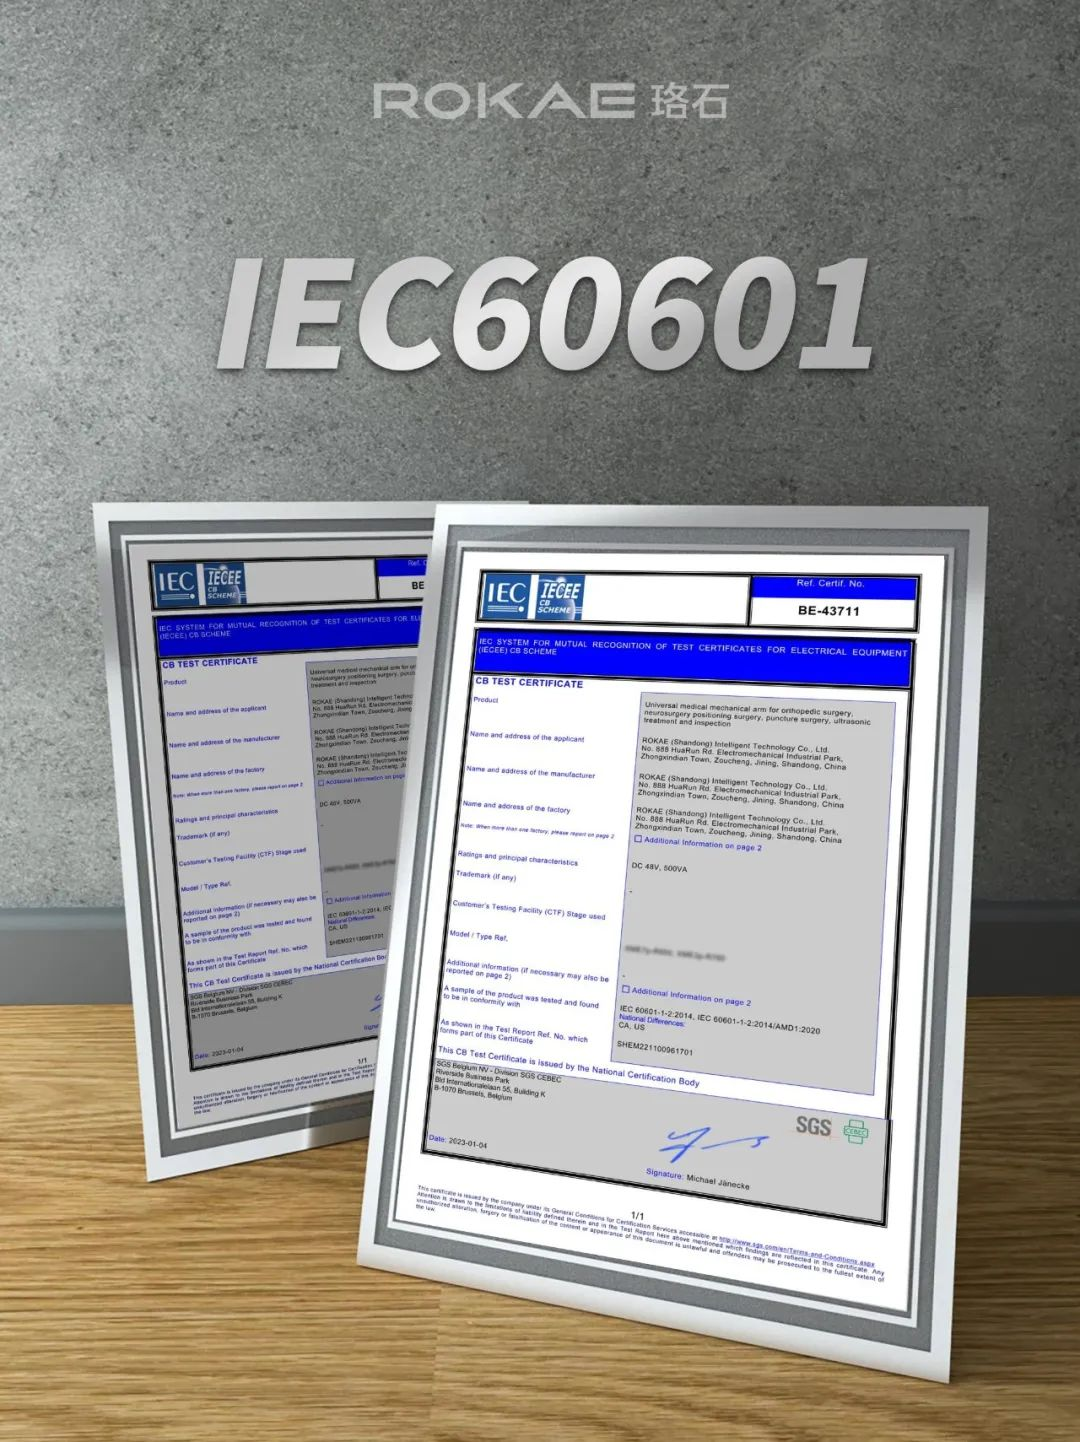 斩获国内首个IEC 60601医疗认证 珞石如何做医疗机器人先锋？